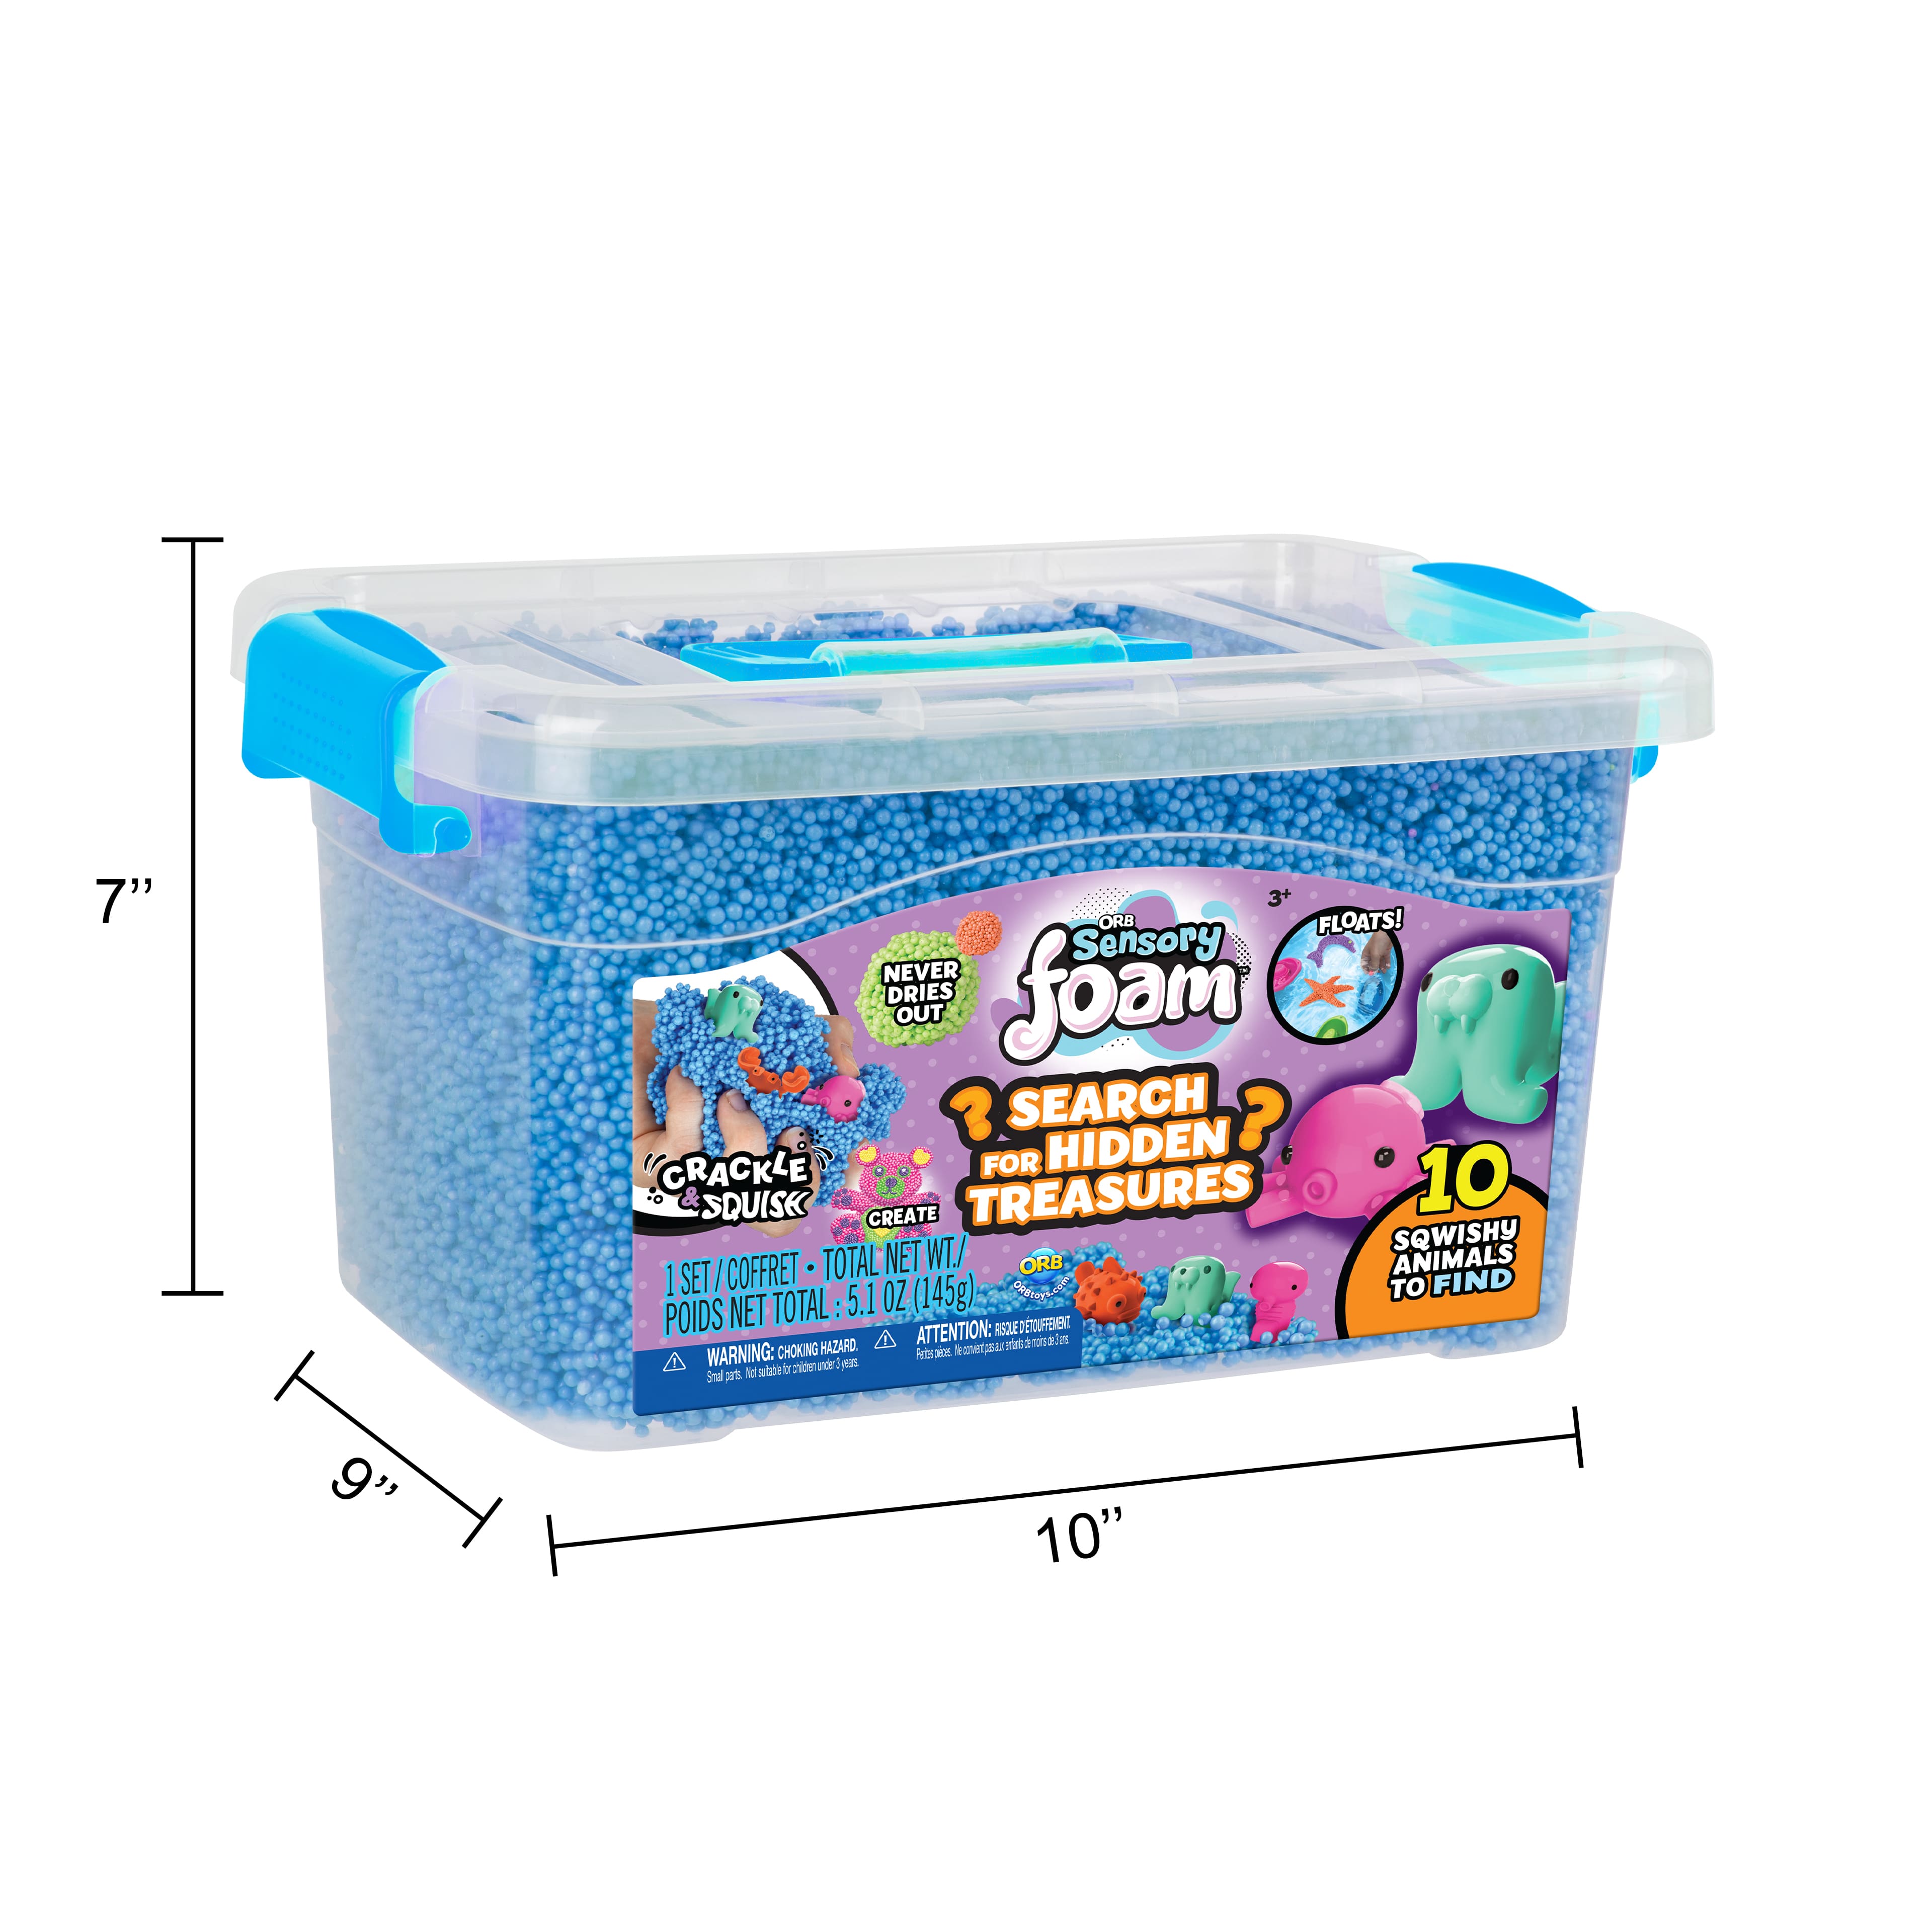 Fun Foam Modeling Playfoam Beads Play Kit (10 Blocks)